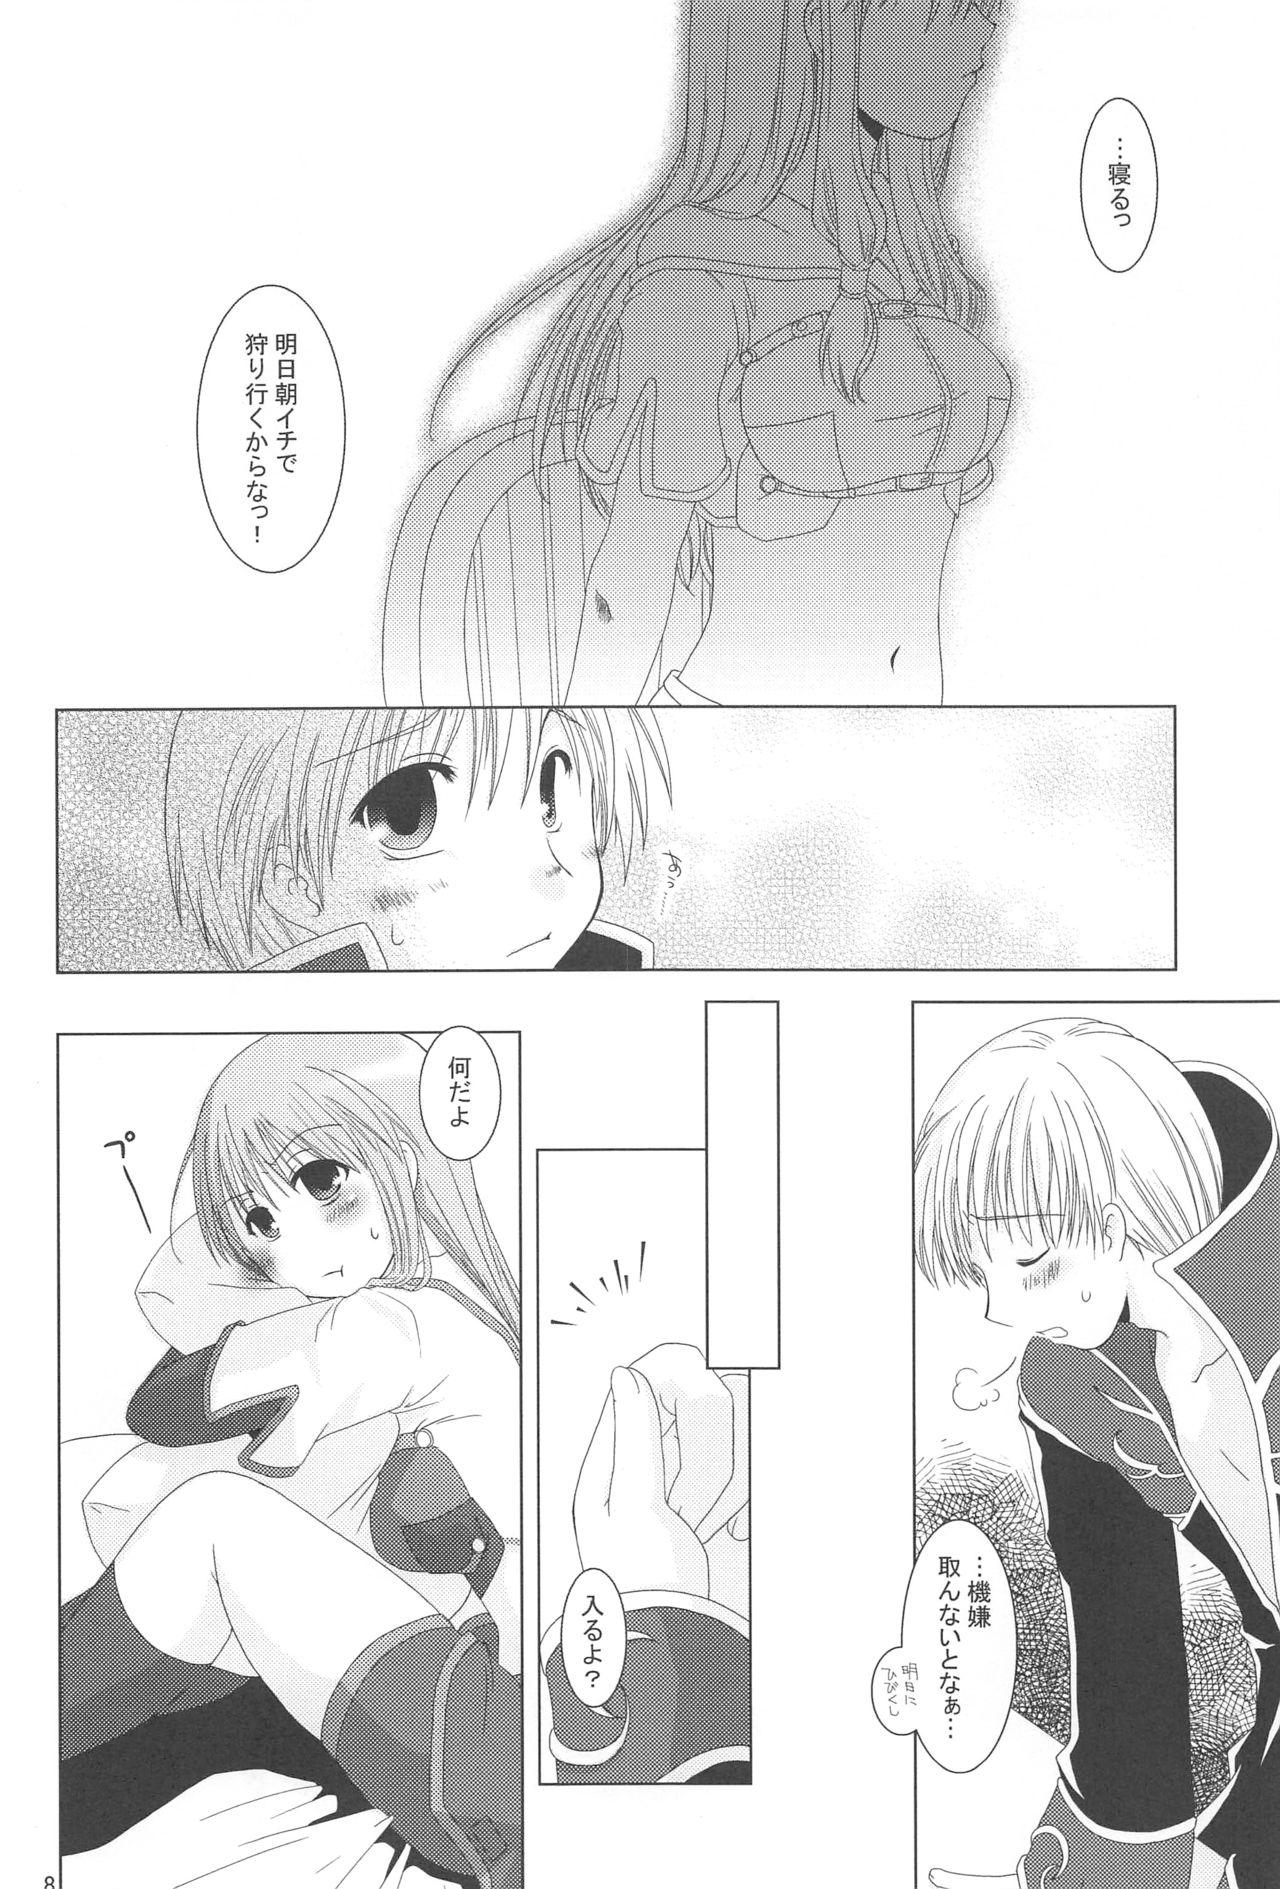 HD Quagmire no Chuushin de, Shuuchuuryoku Koujou to Sakebu - Ragnarok online Sexcam - Page 7